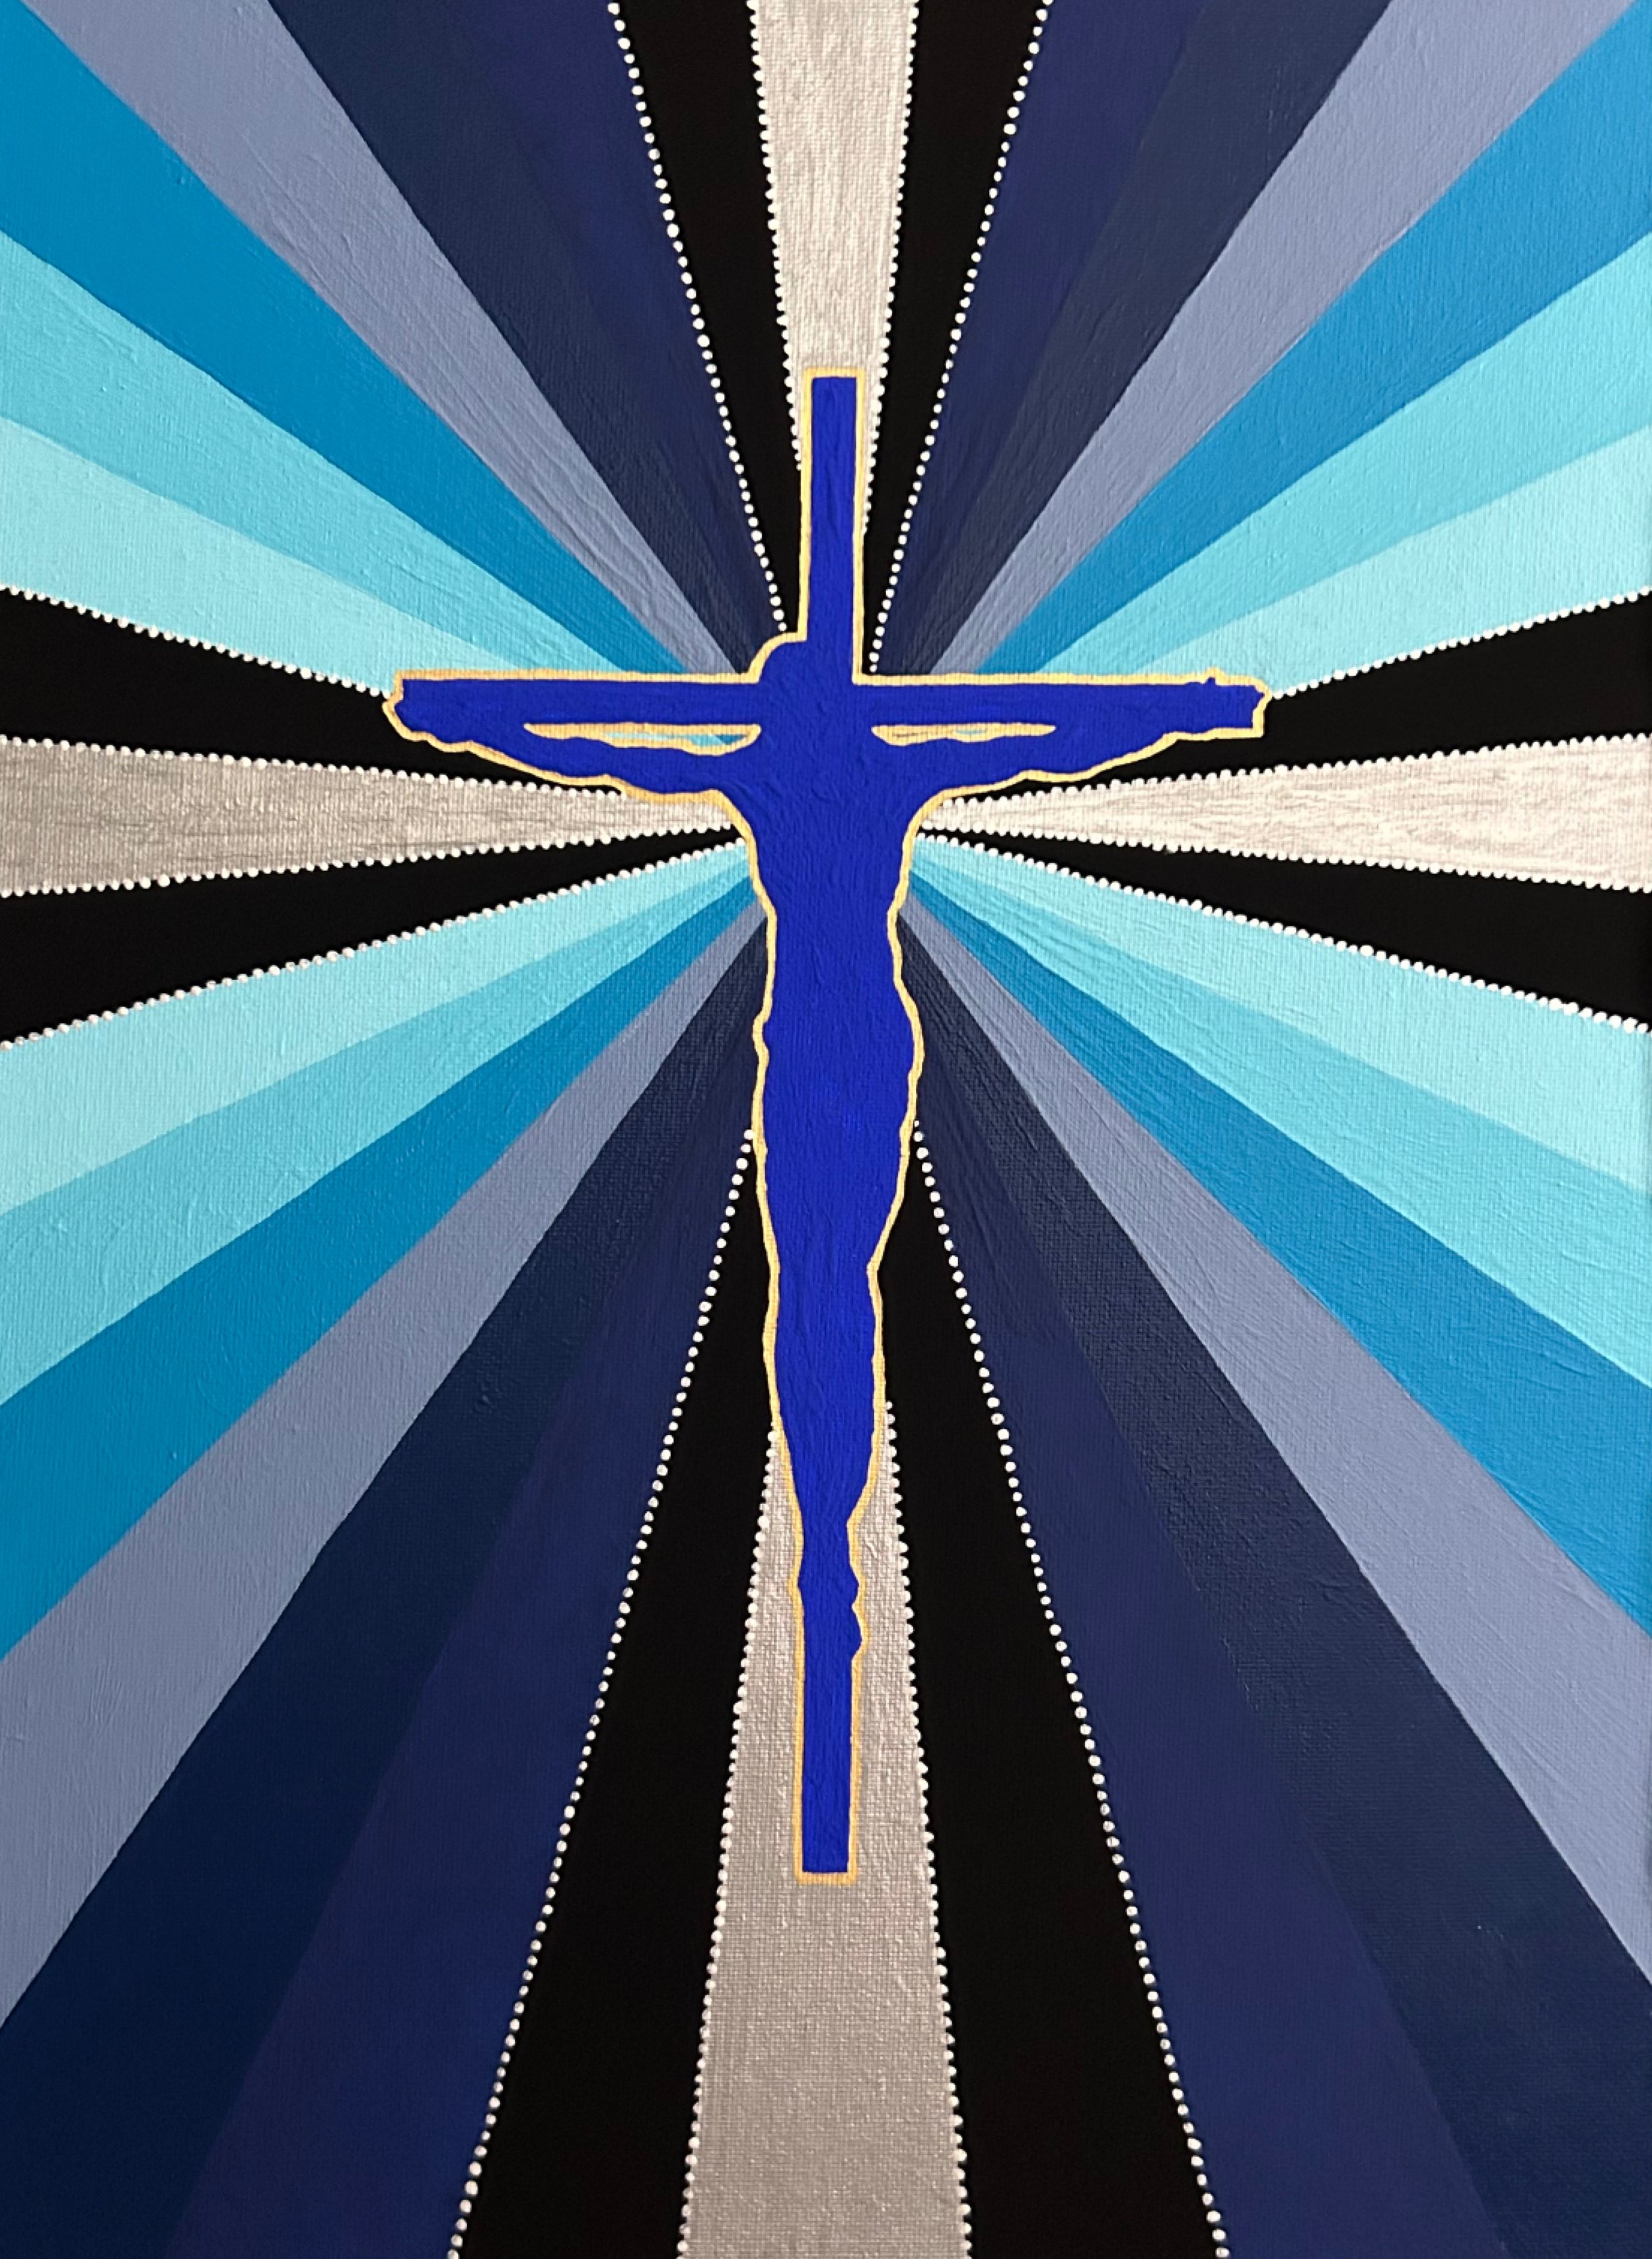 Electric Jesus (Blue Temple)